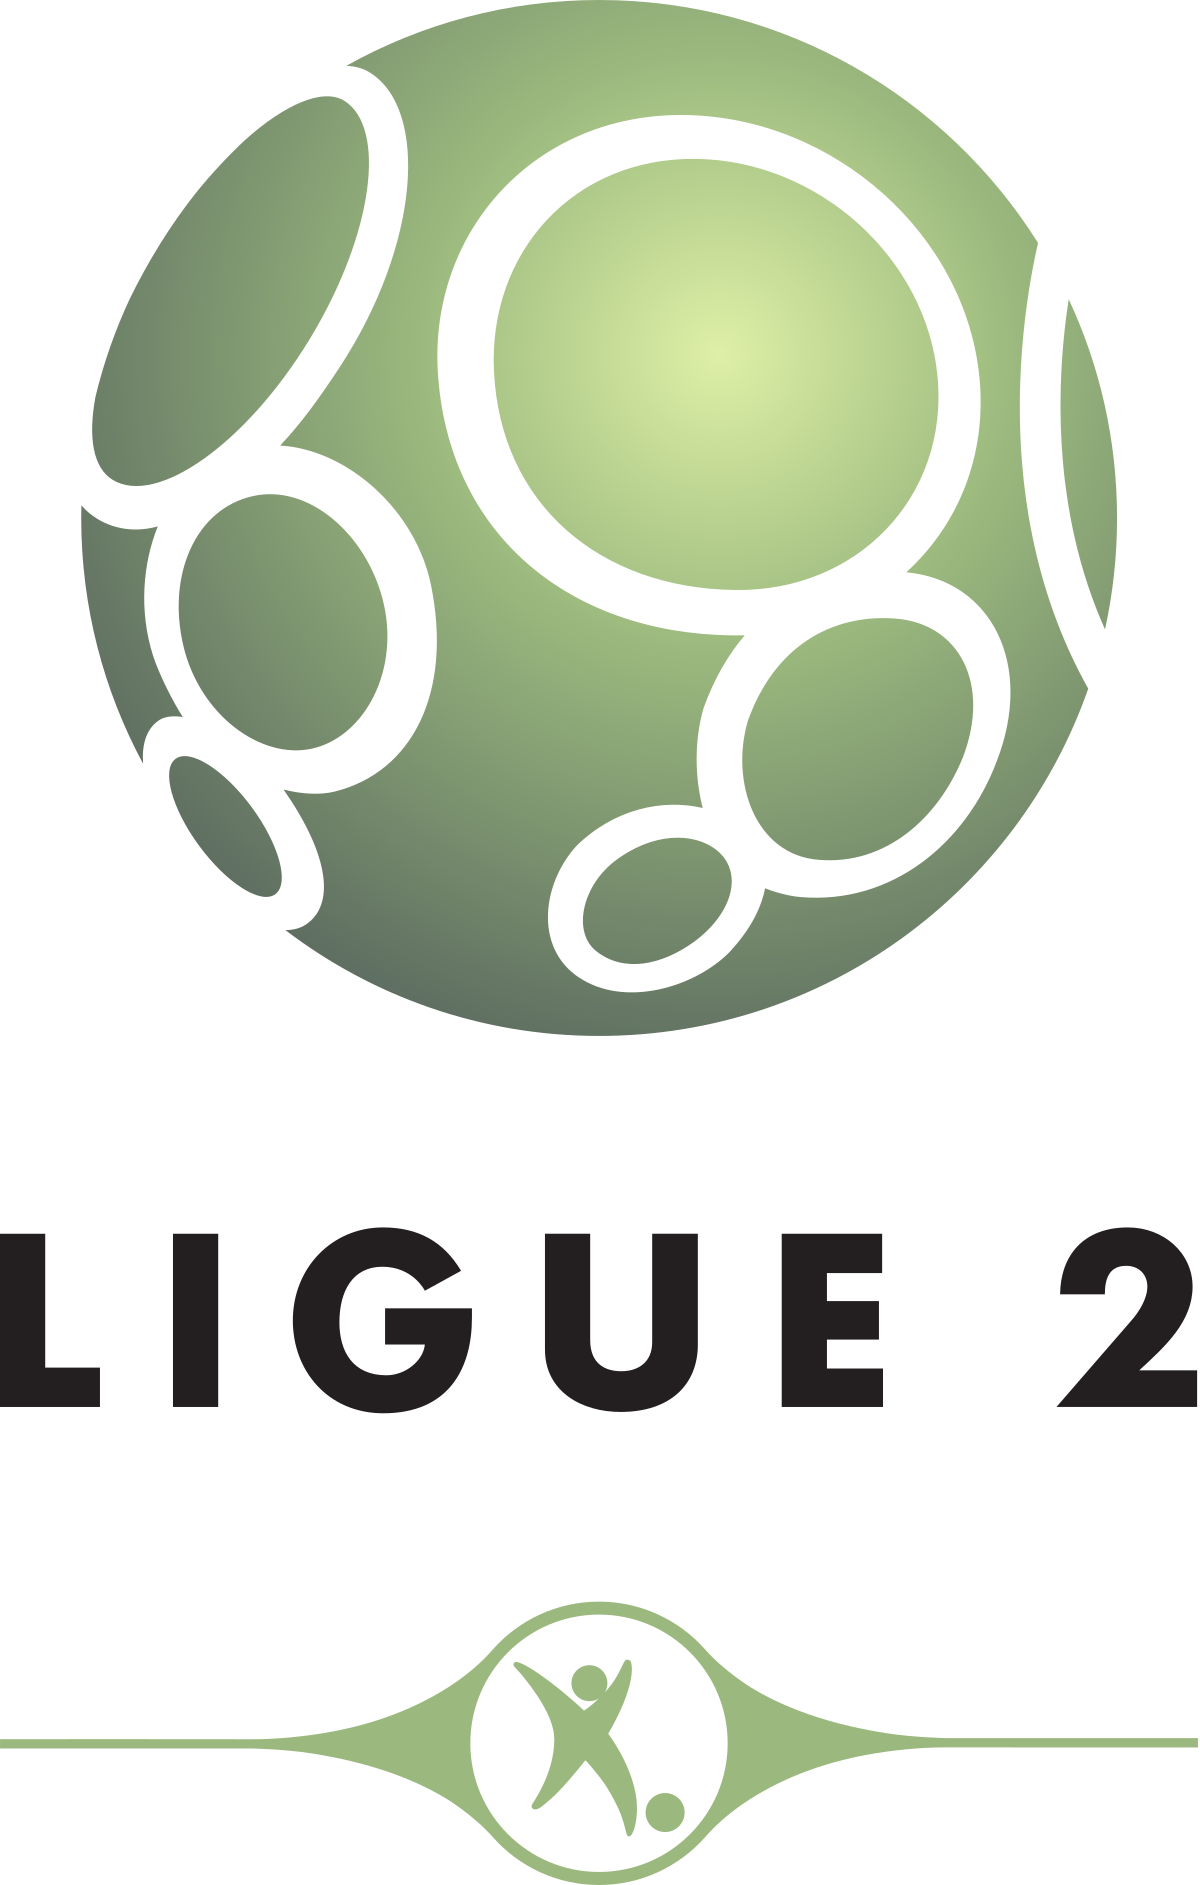 Mauritania Ligue 2